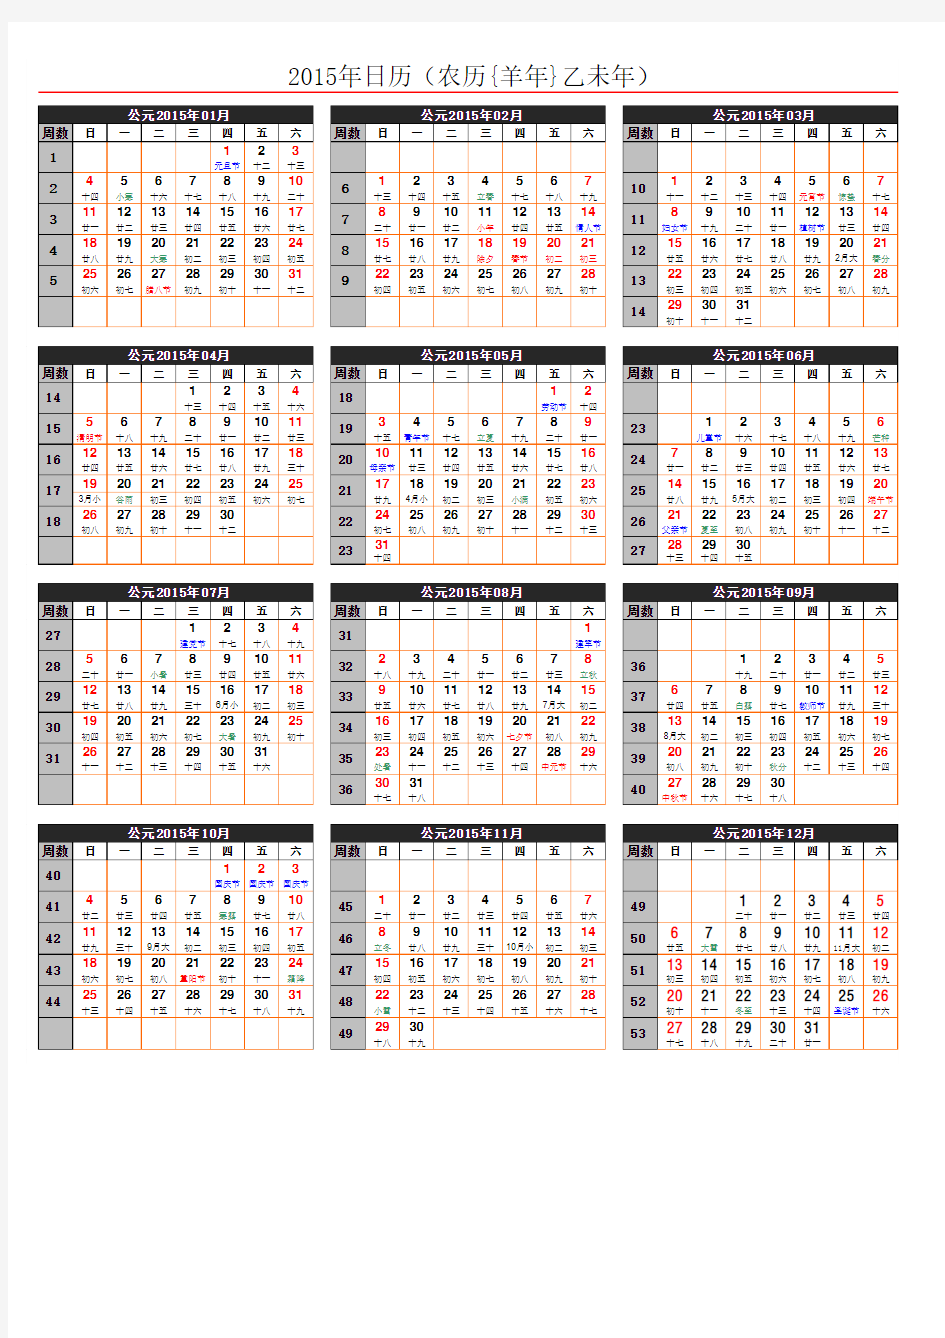 2015日历年历(A4一页_含农历节气假日周数等)